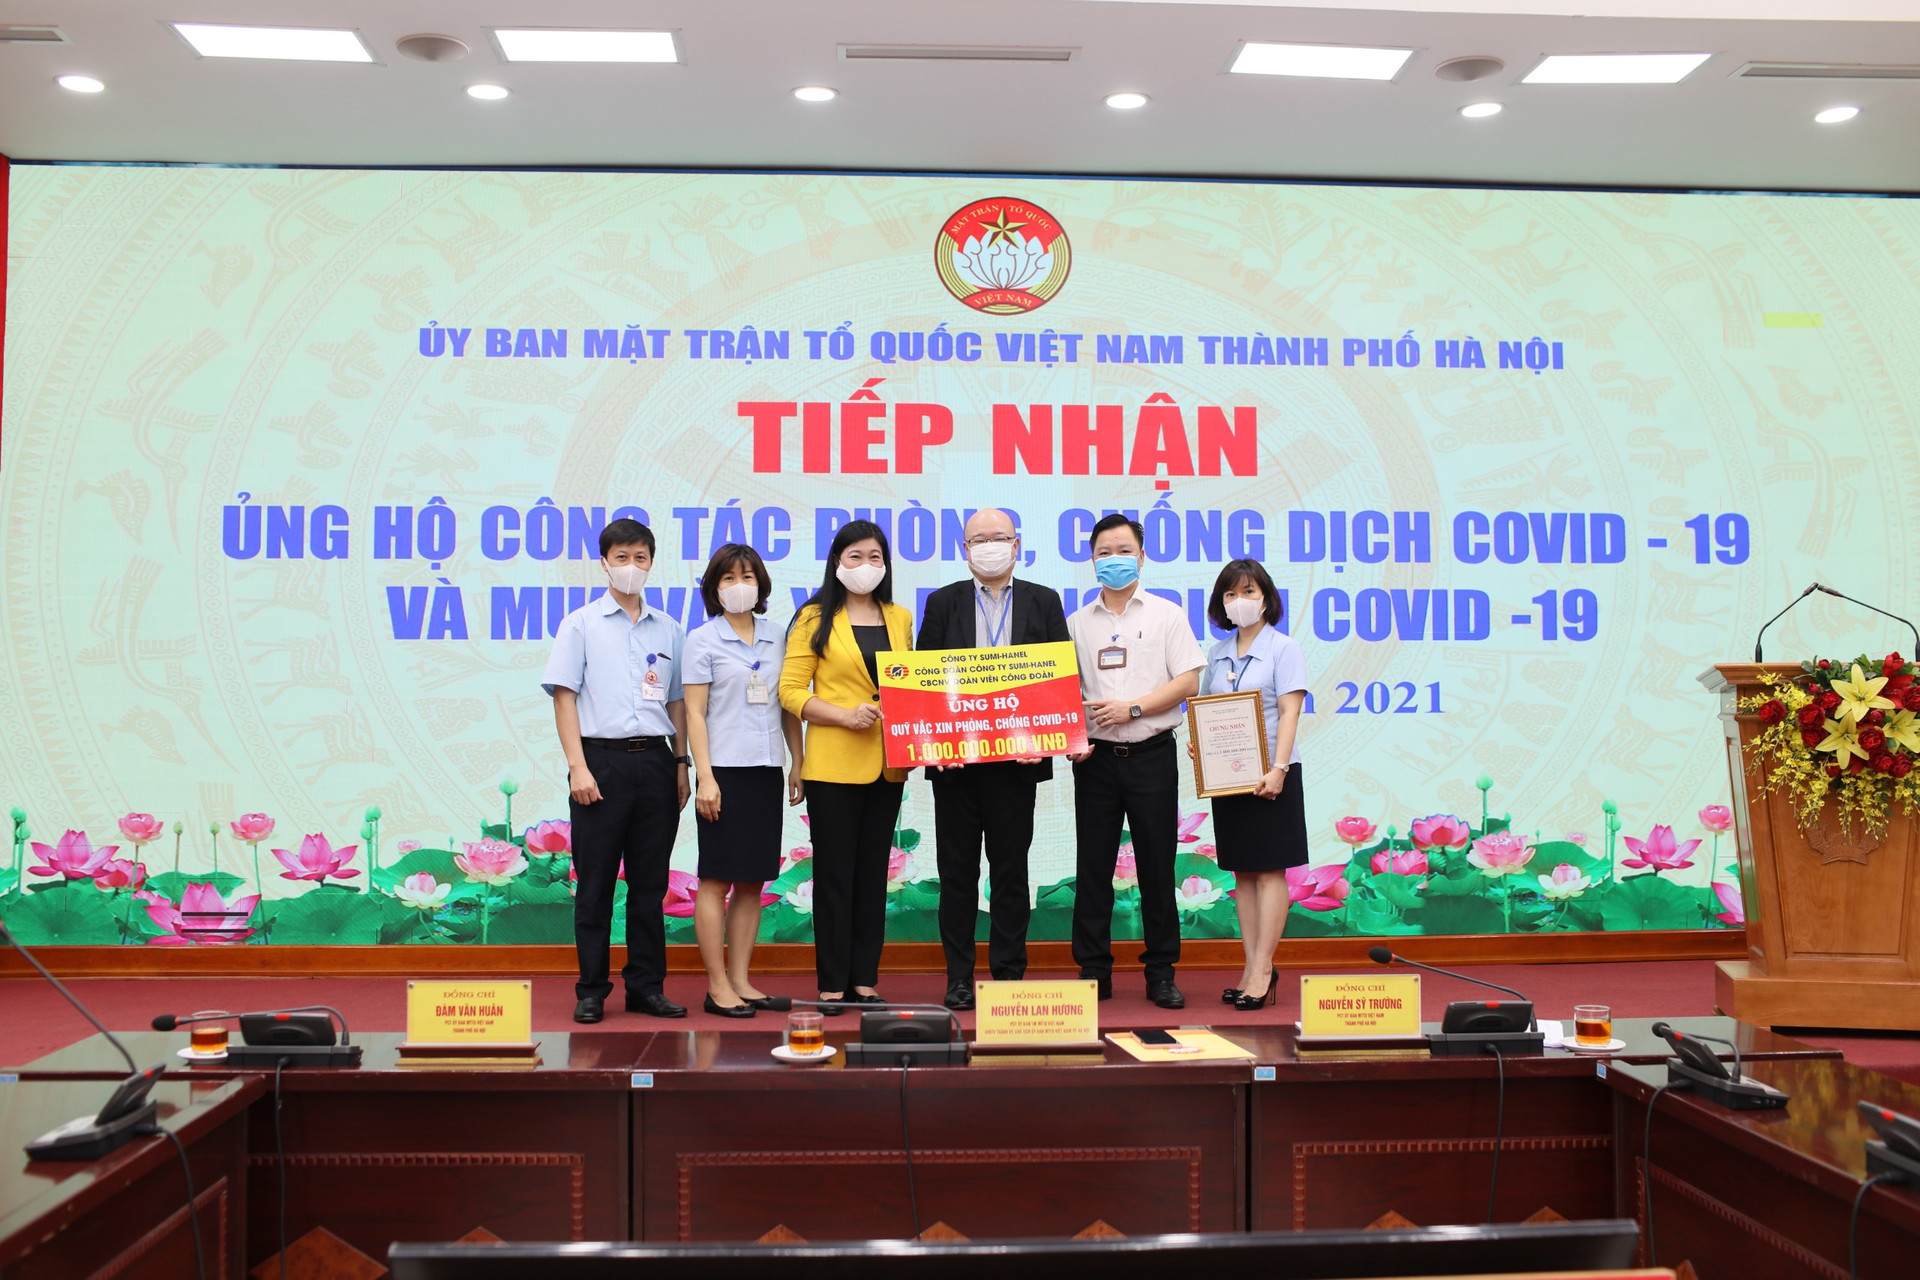 Bà Nguyễn Lan Hương, Chủ tịch Ủy ban MTTQ thành phố Hà Nội tiếp nhận ủng hộ từ công ty Sumi Hanel.